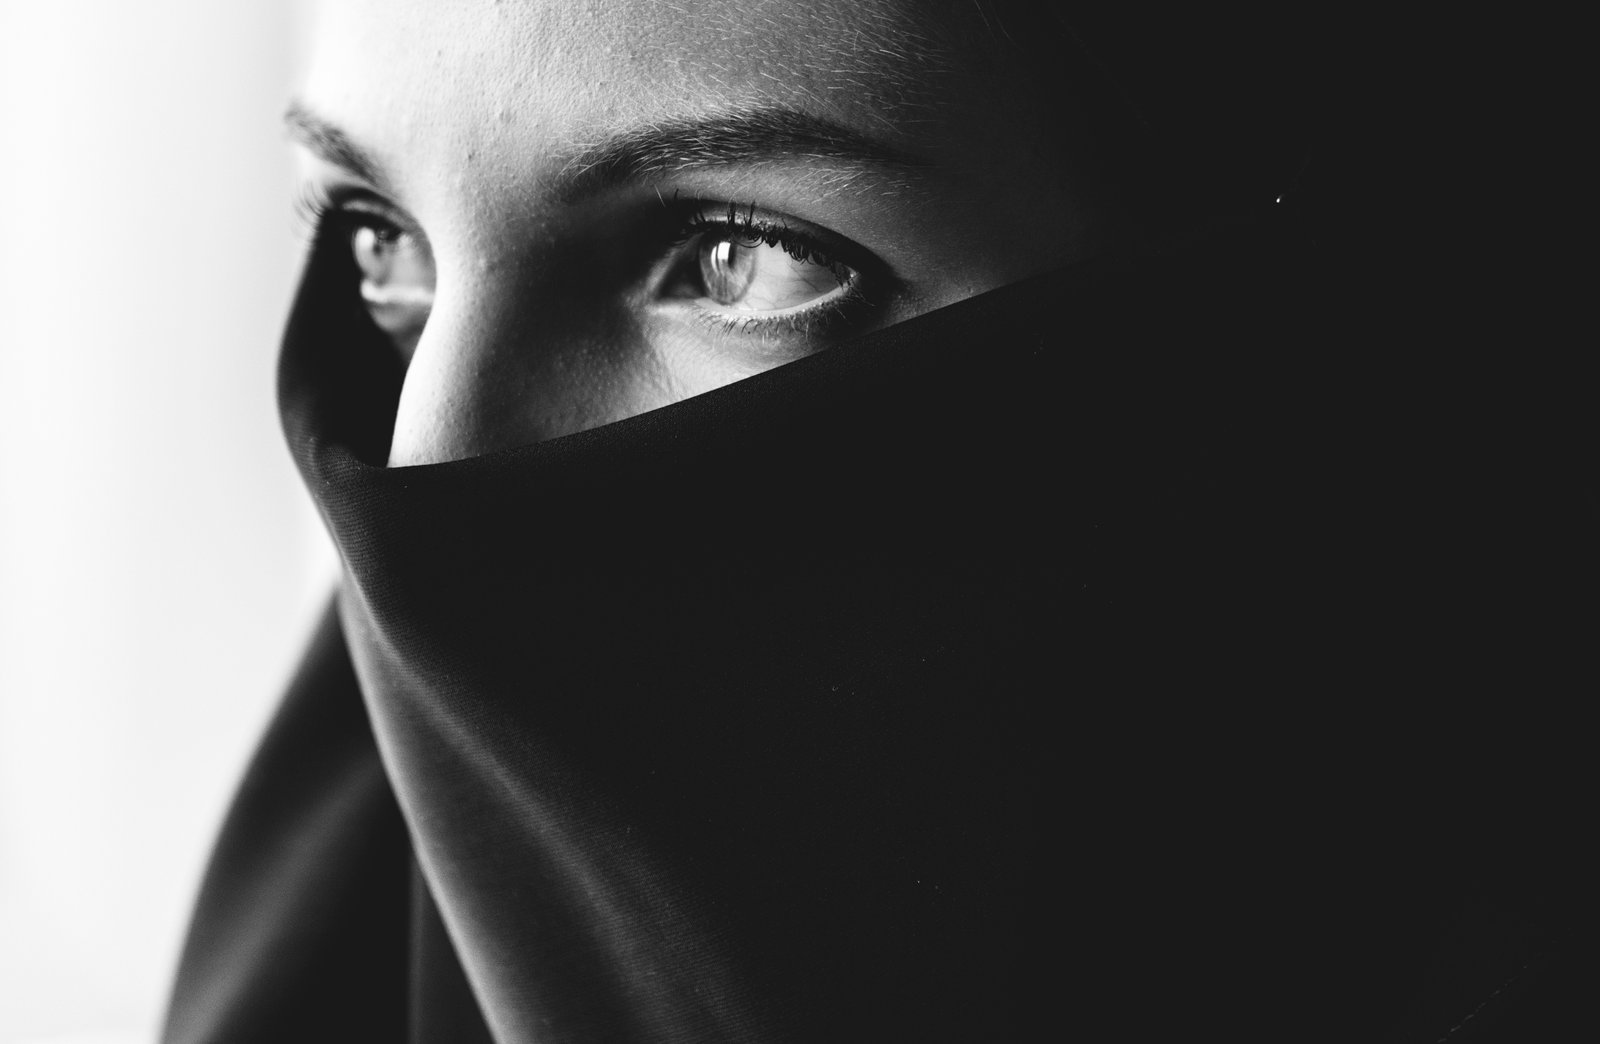 Ilustrasi niqab